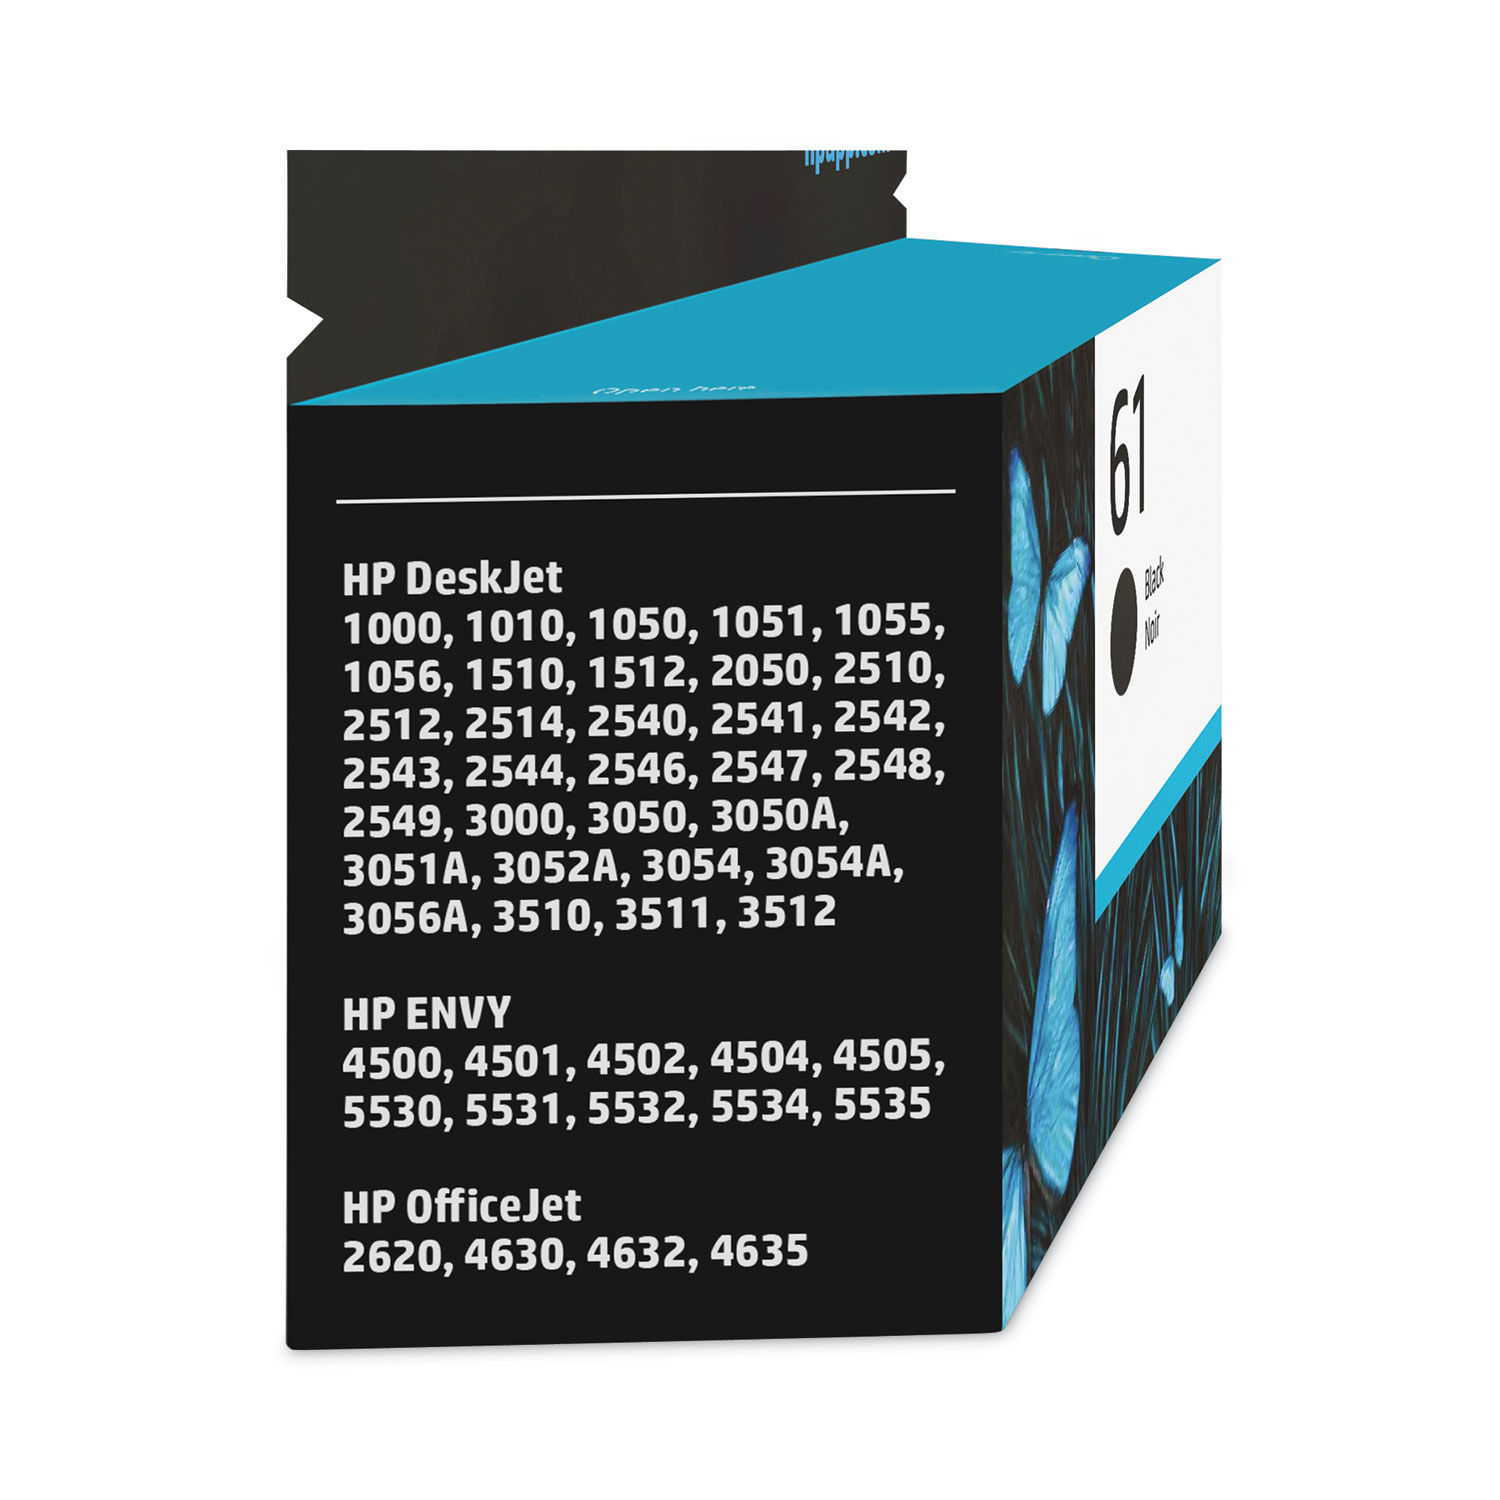 2pk Black Ink for HP 61XL DeskJet 2540 2541 2542 2543 2544 2545 2547  Printer